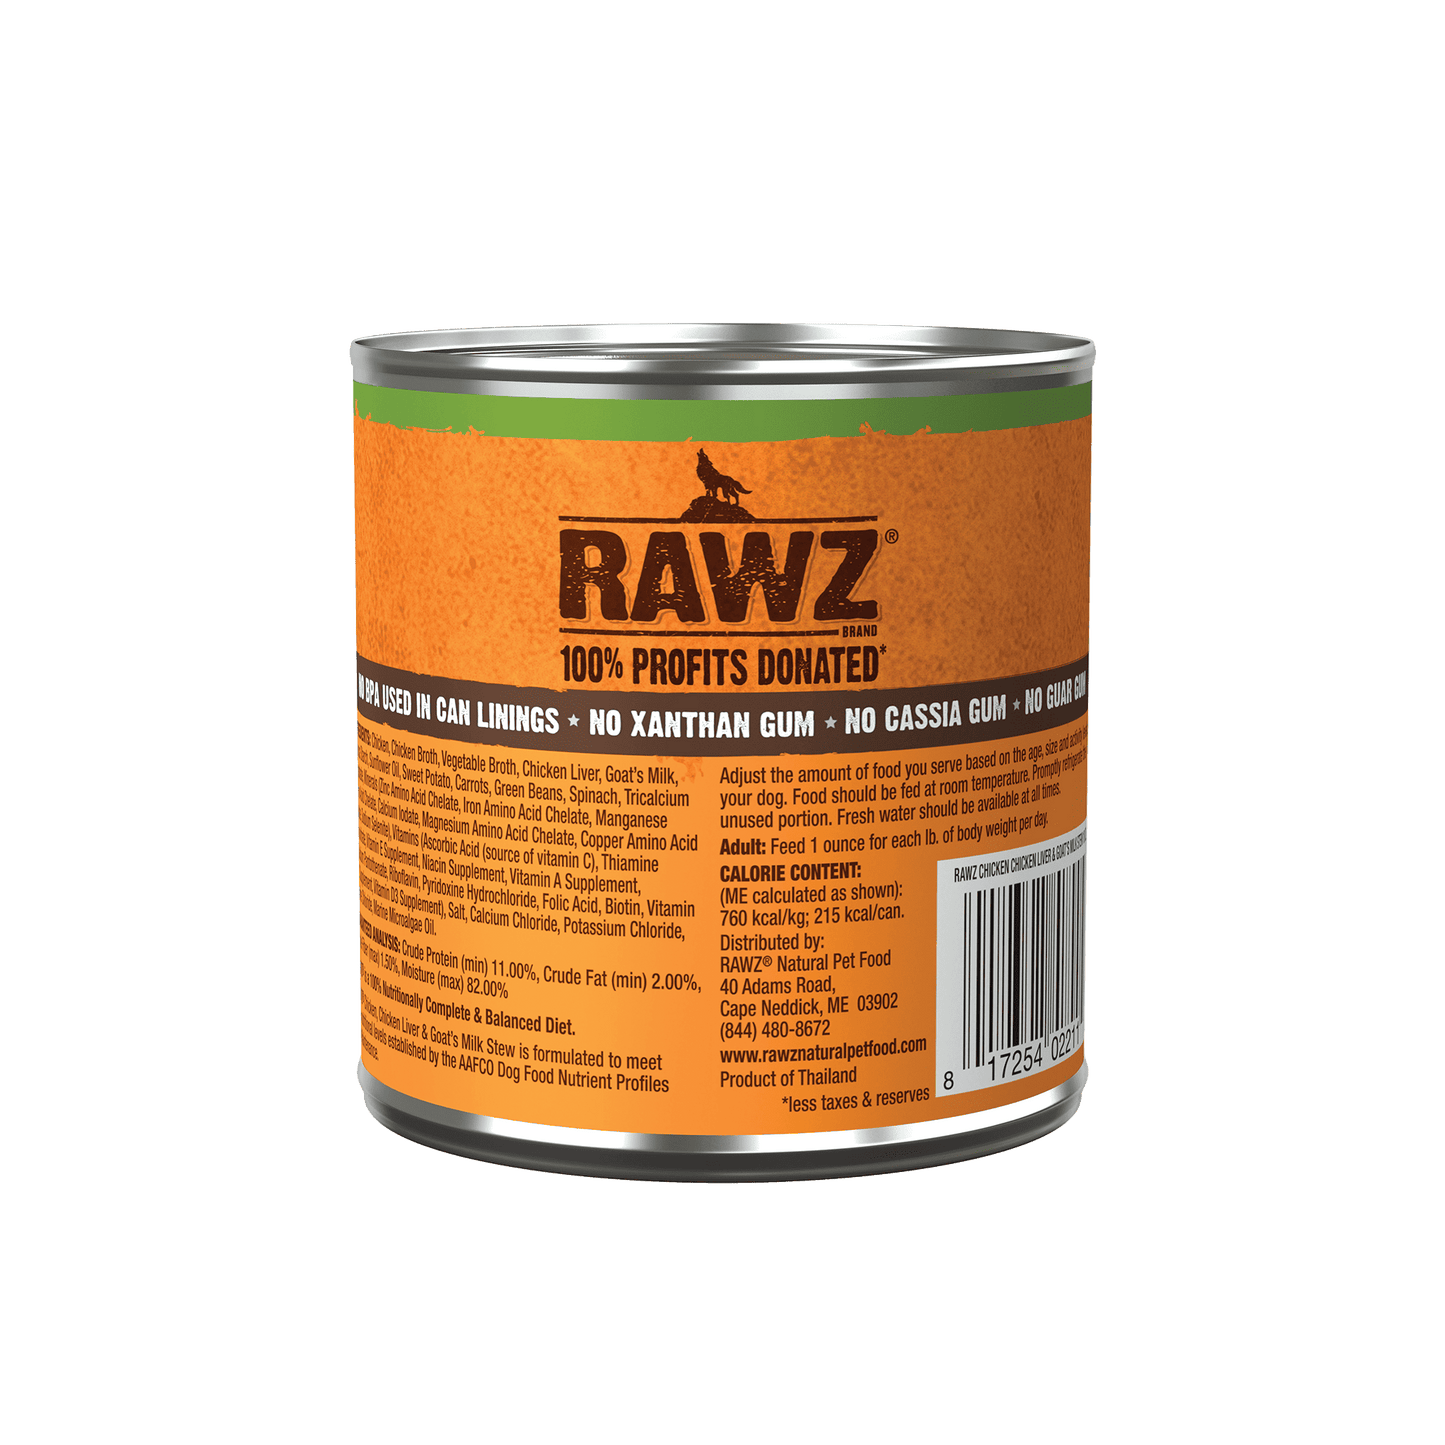 RAWZ Chicken, Chicken Liver & Goat’s Milk Stew for Dogs